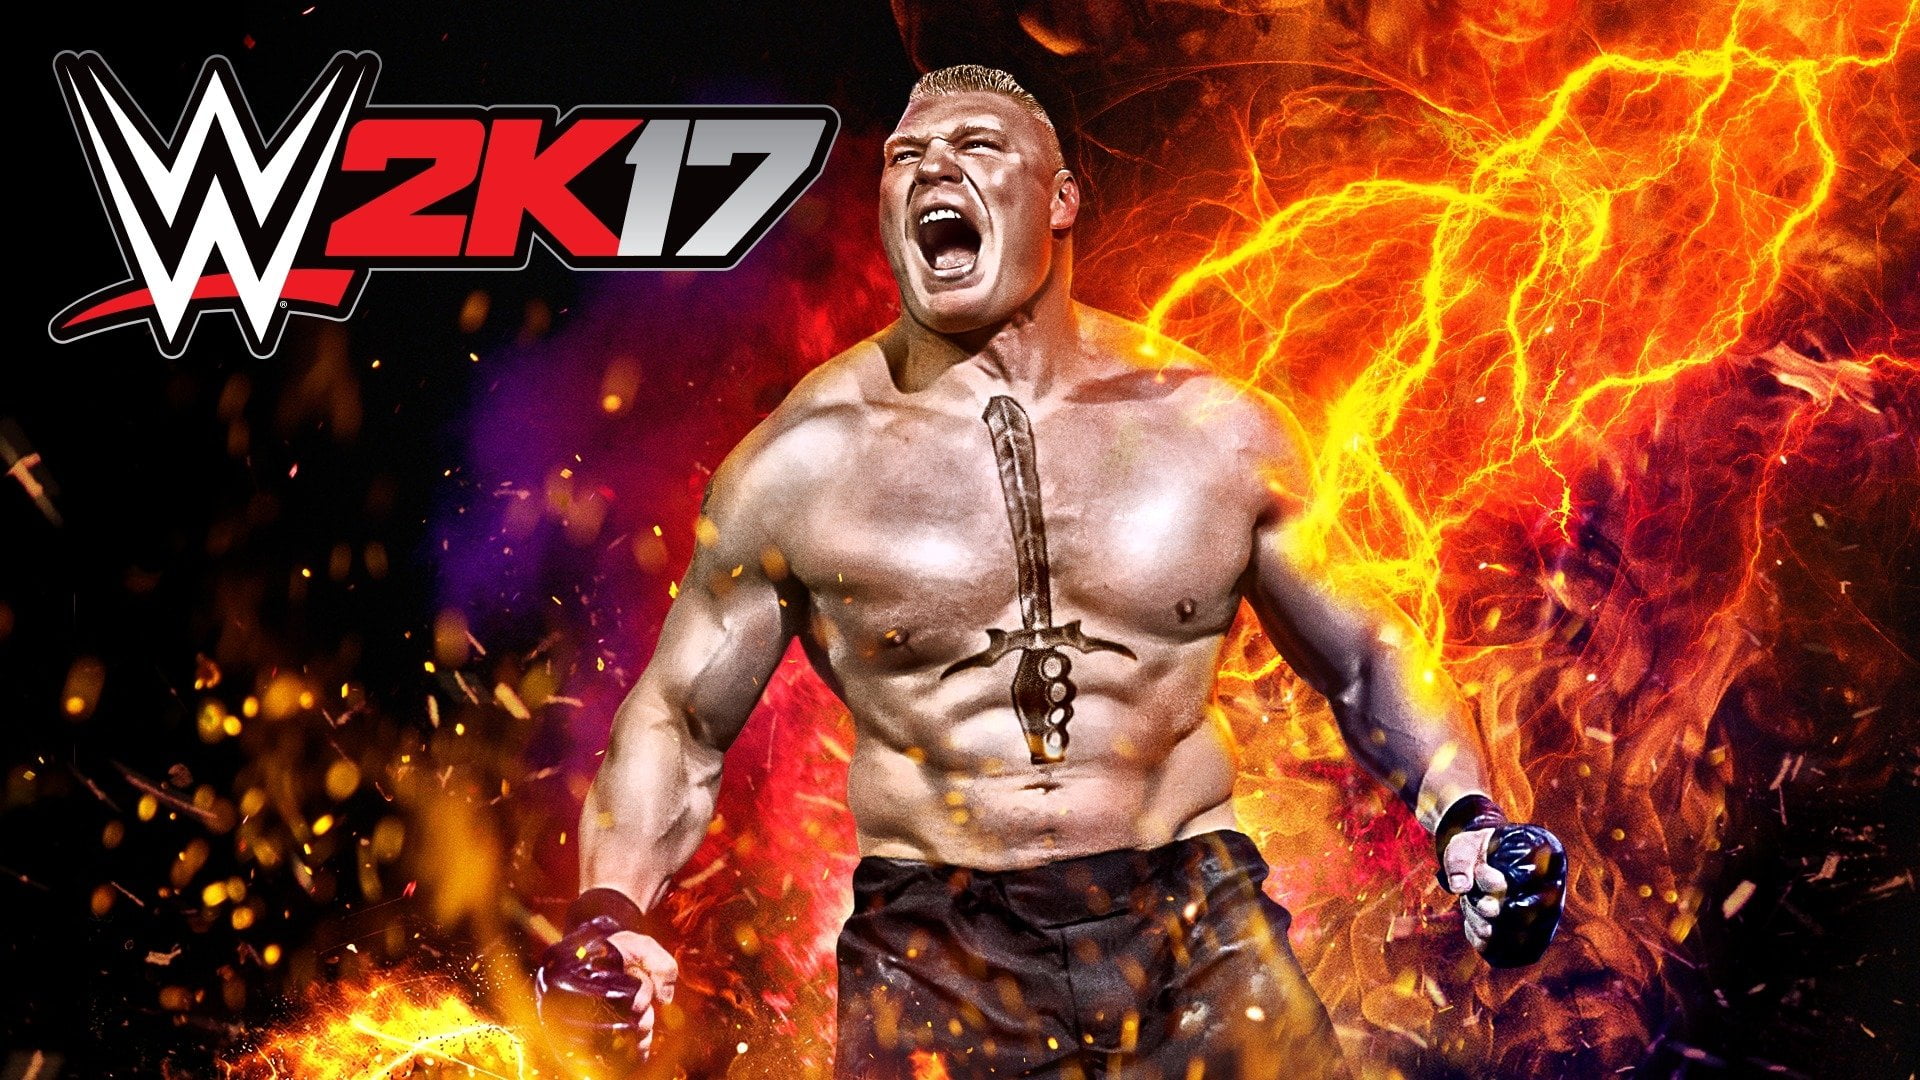 Video Game, WWE 2K17, Brock Lesnar, one person, shirtless, men